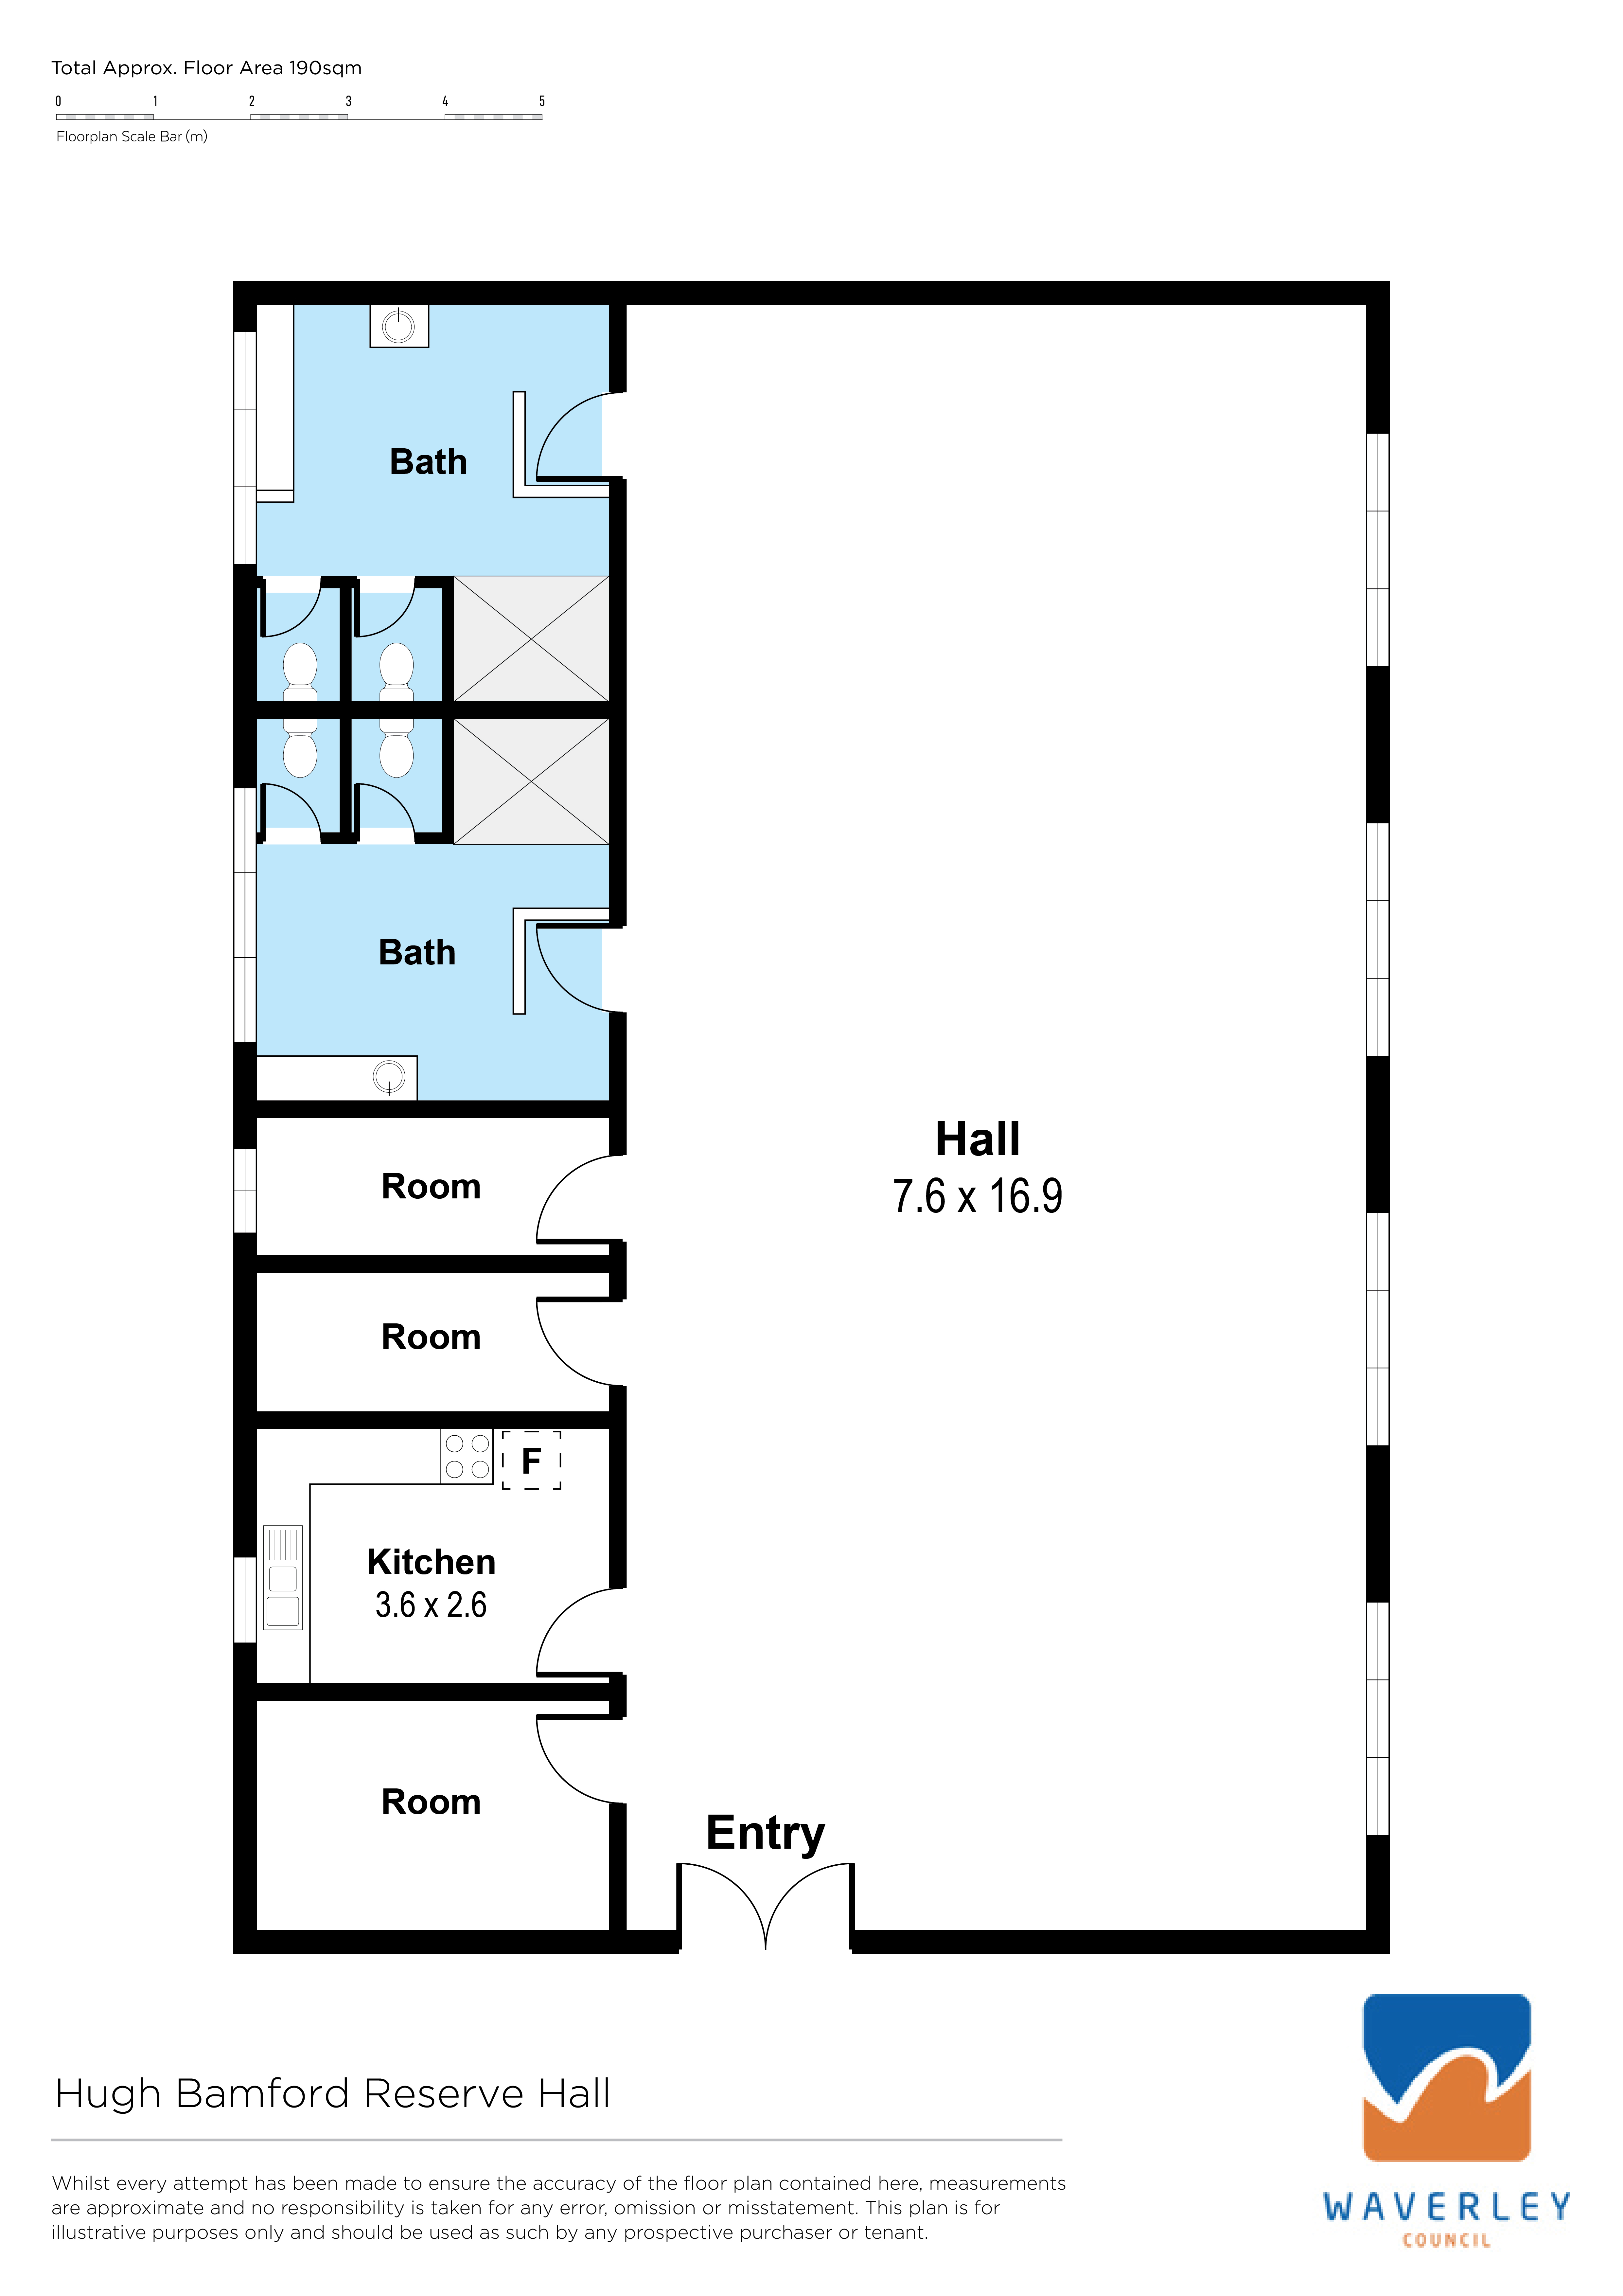 Hugh Bamford Reserve Hall Floorplan